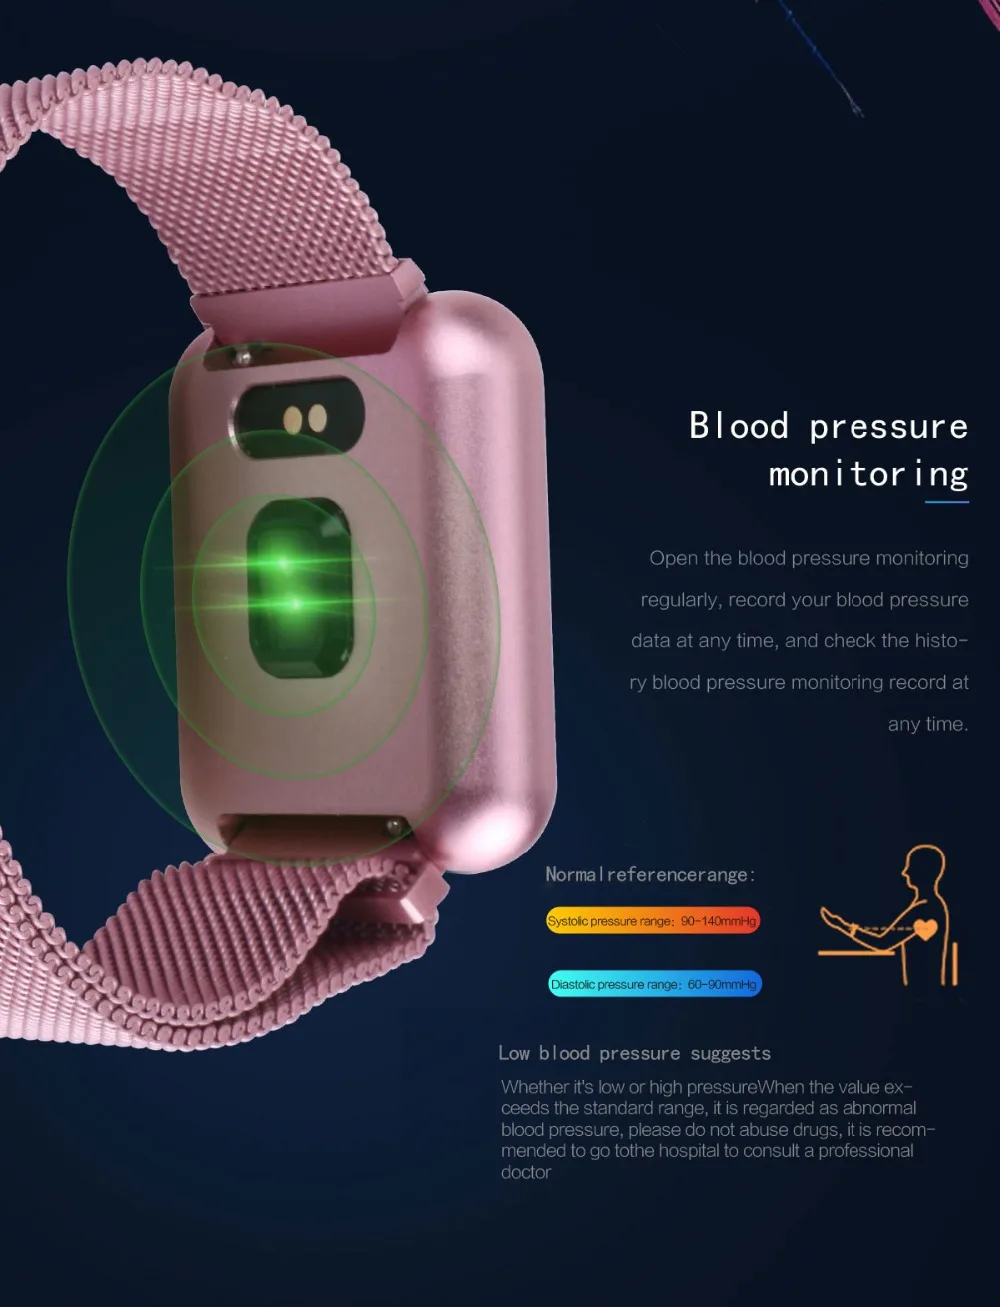 Смарт-часы COXANG P68 для мужчин, измеритель артериального давления, шагомер, трекер активности, IP68 Водонепроницаемые Смарт-часы для Apple IOS Iphone Android